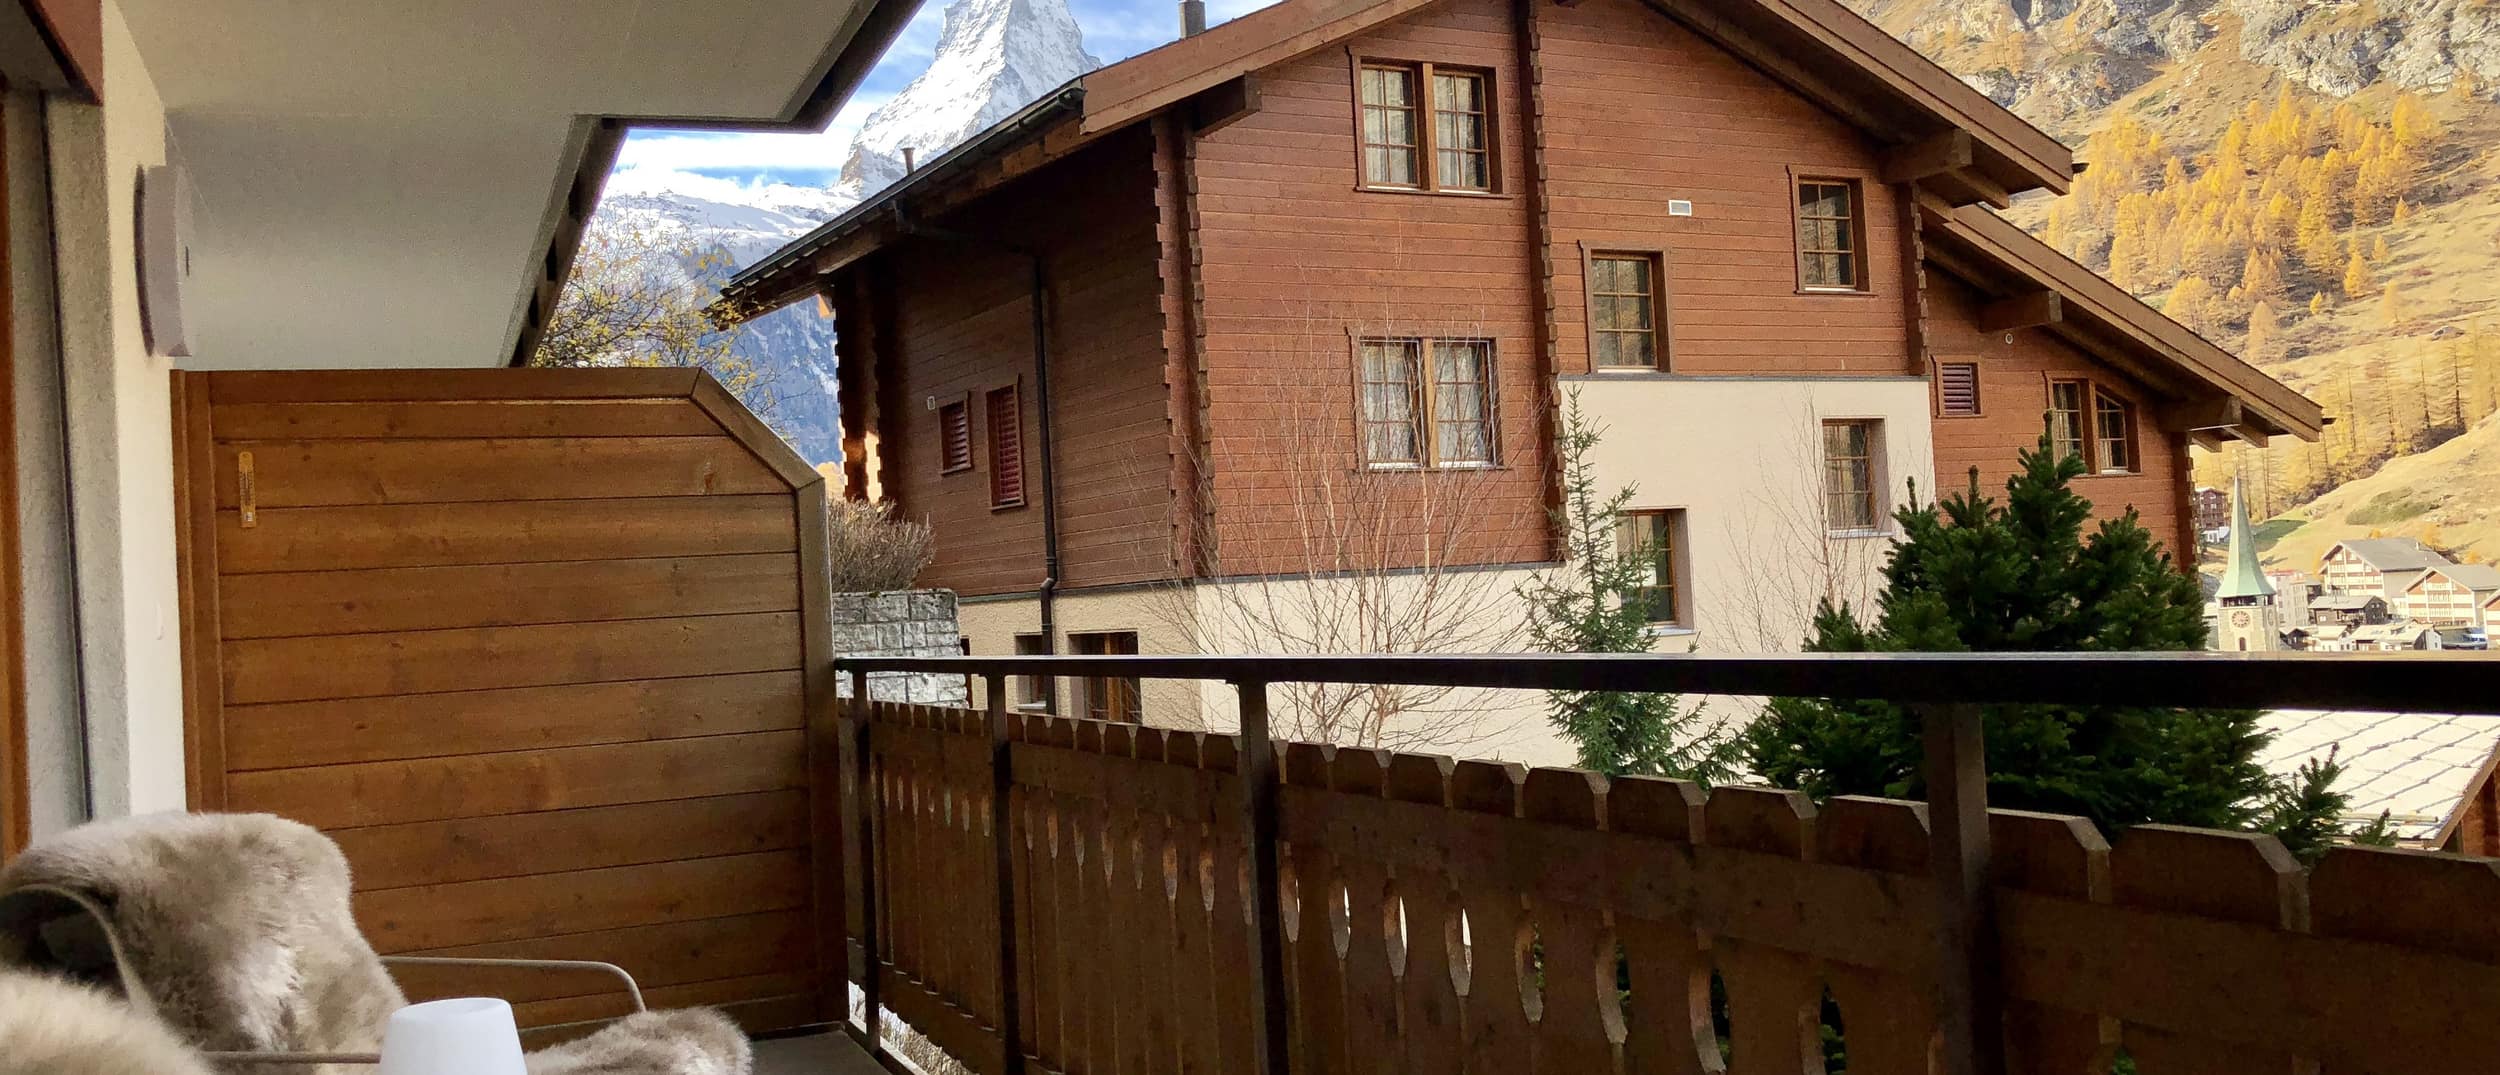 Alpine Erholung in Ferienwohnungen in der Schweiz